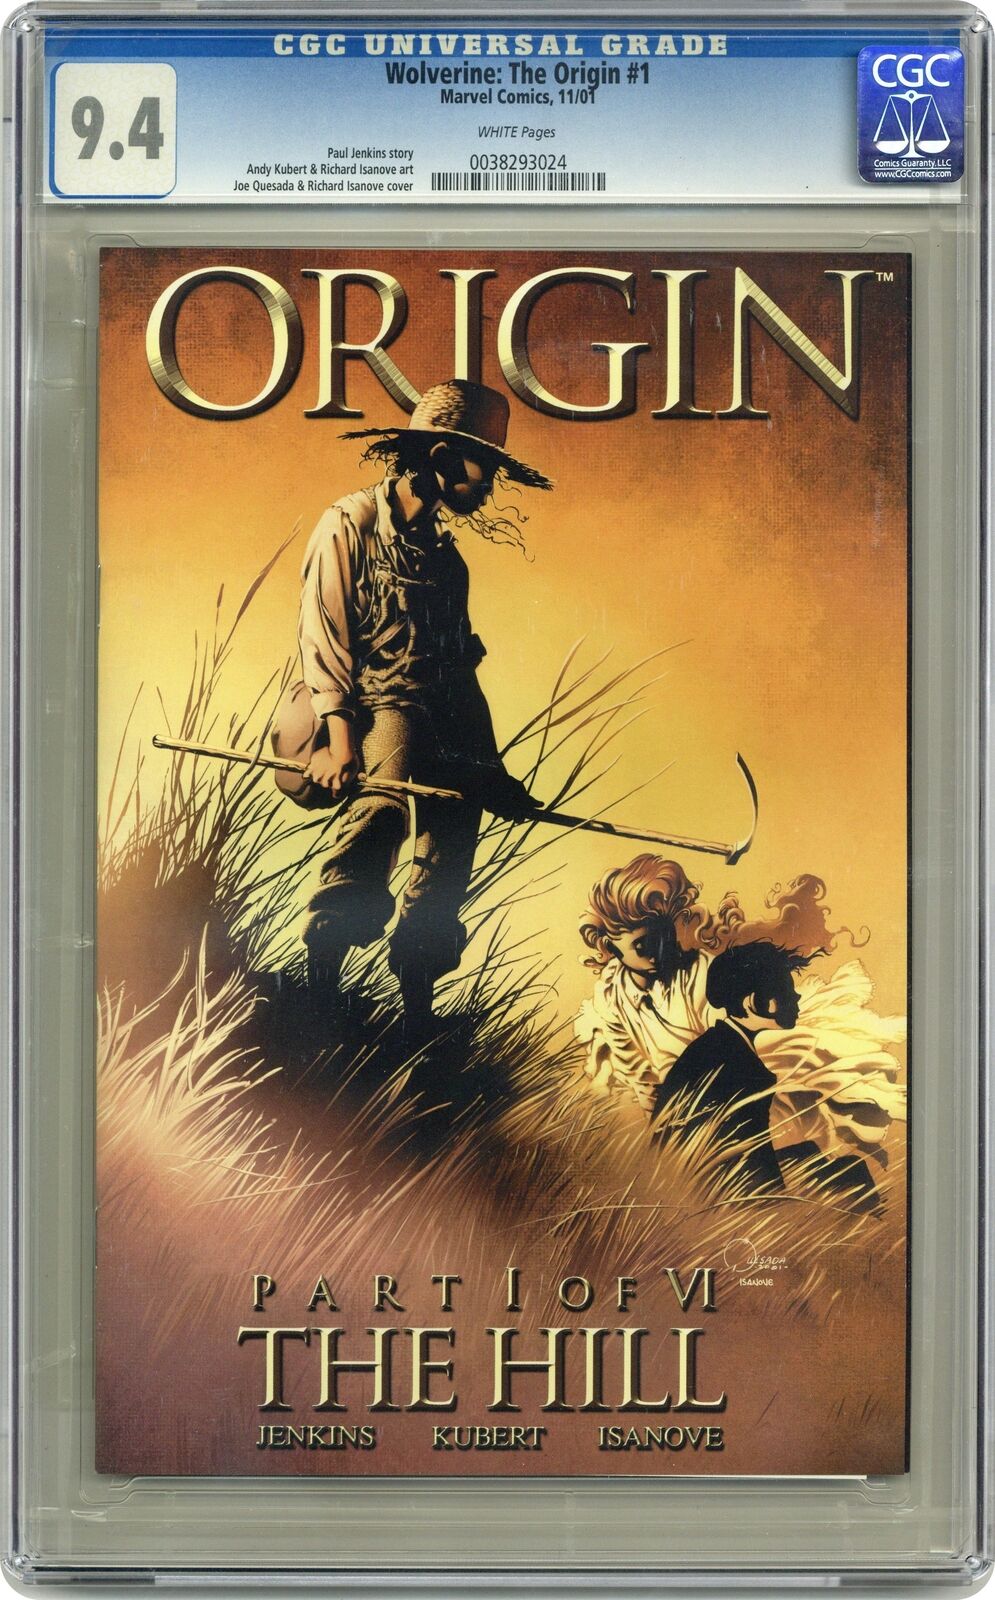 Wolverine The Origin #1 CGC 9.4 2001 0038293024